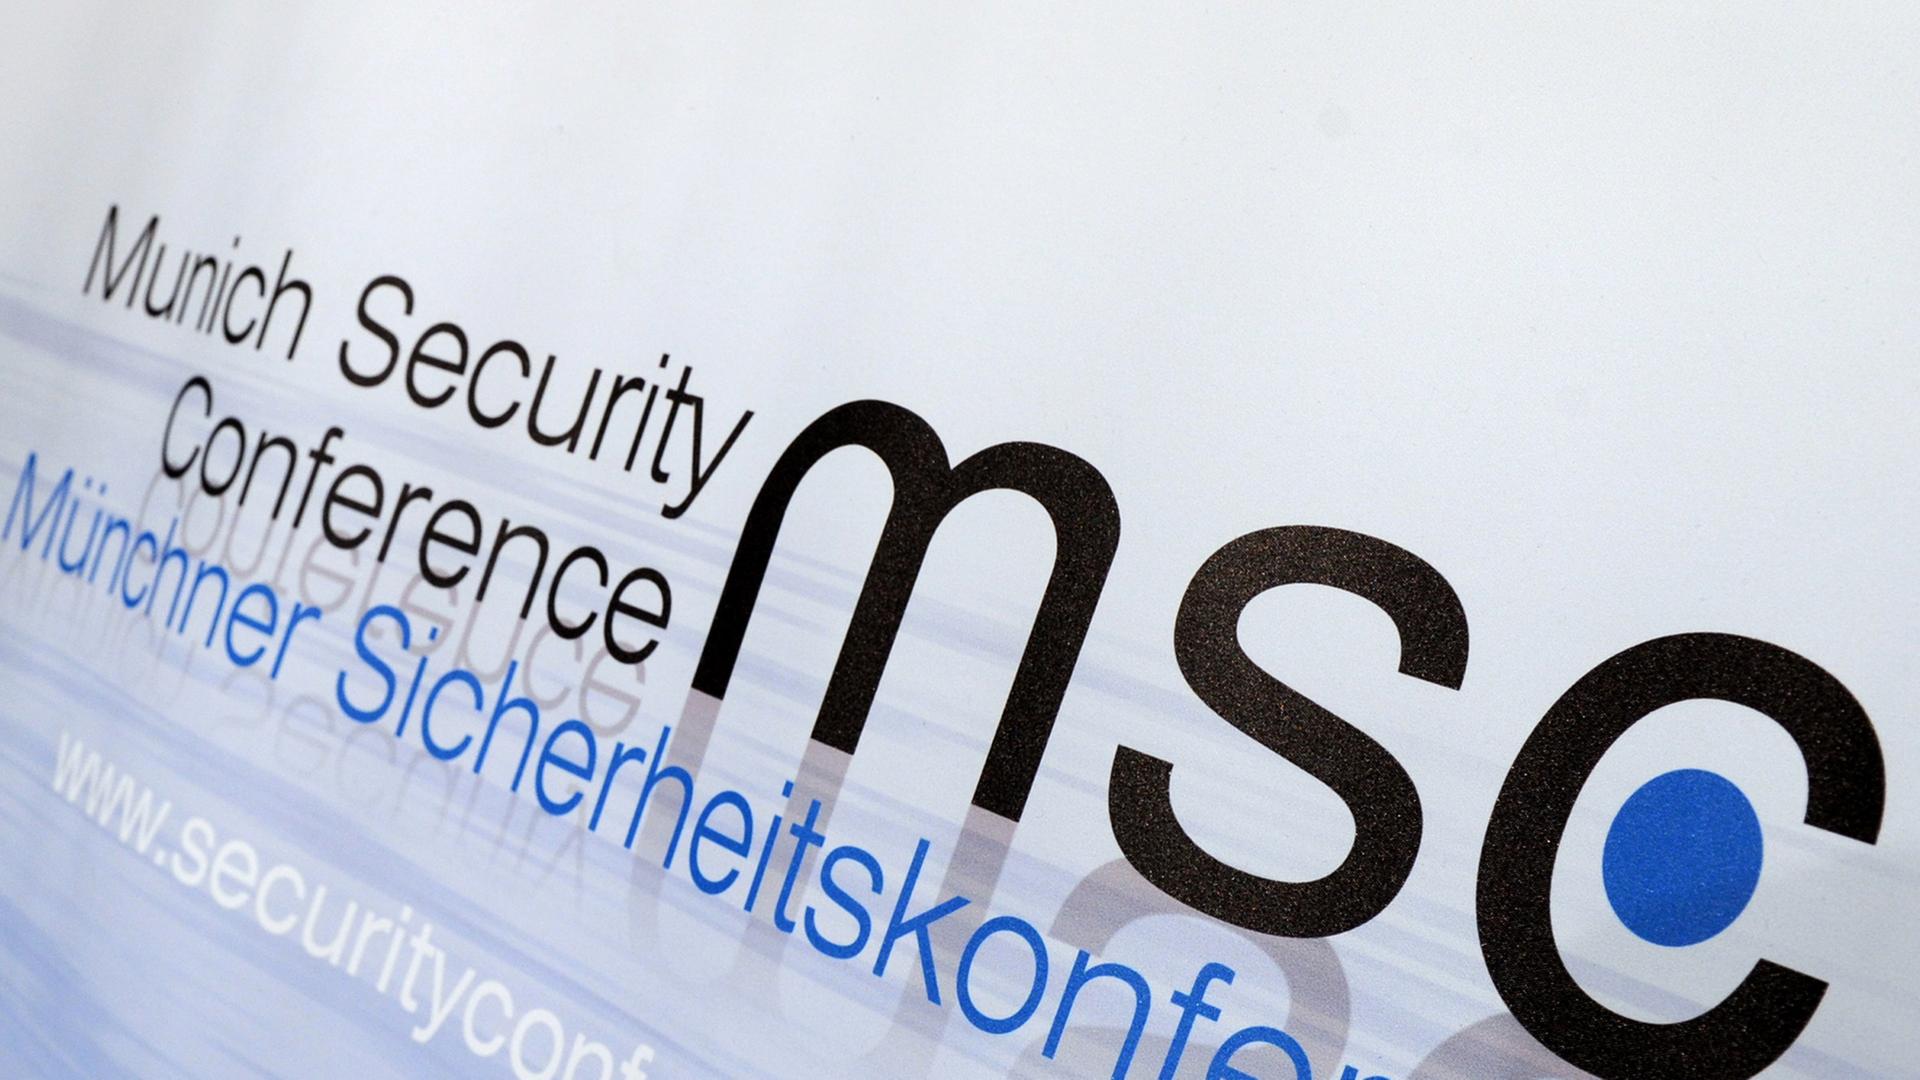 Viele Konflikte sind Thema bei der Münchner Sicherheitskonferenz.